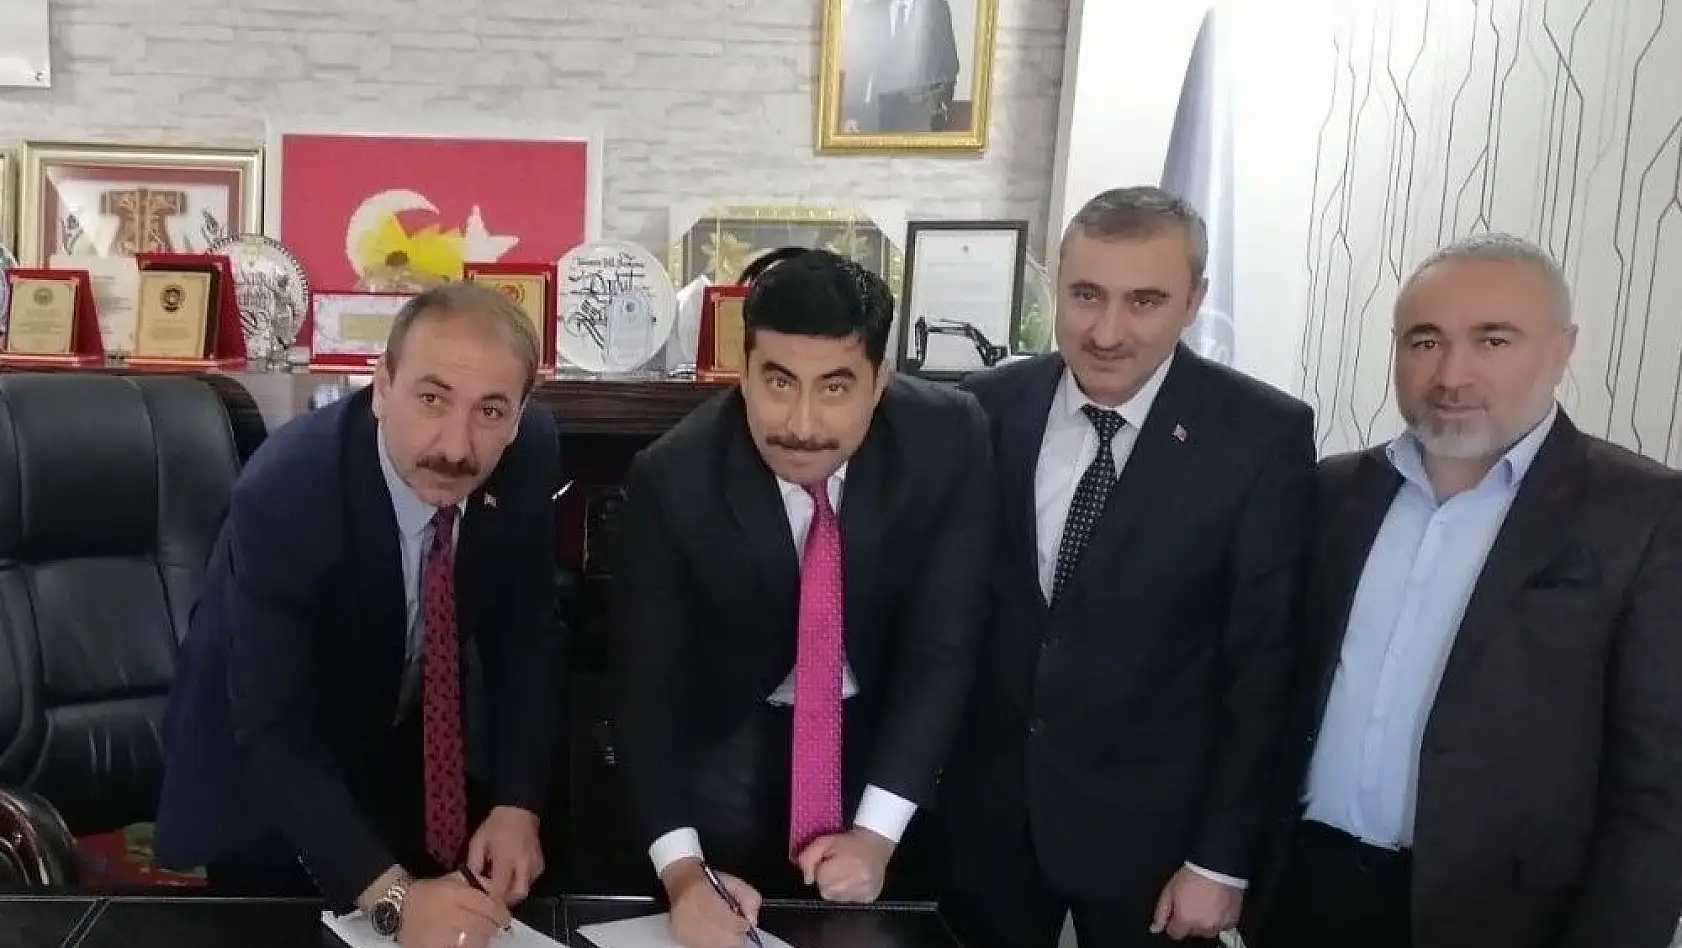 Tomarza Belediyesi'nde imzalar atıldı